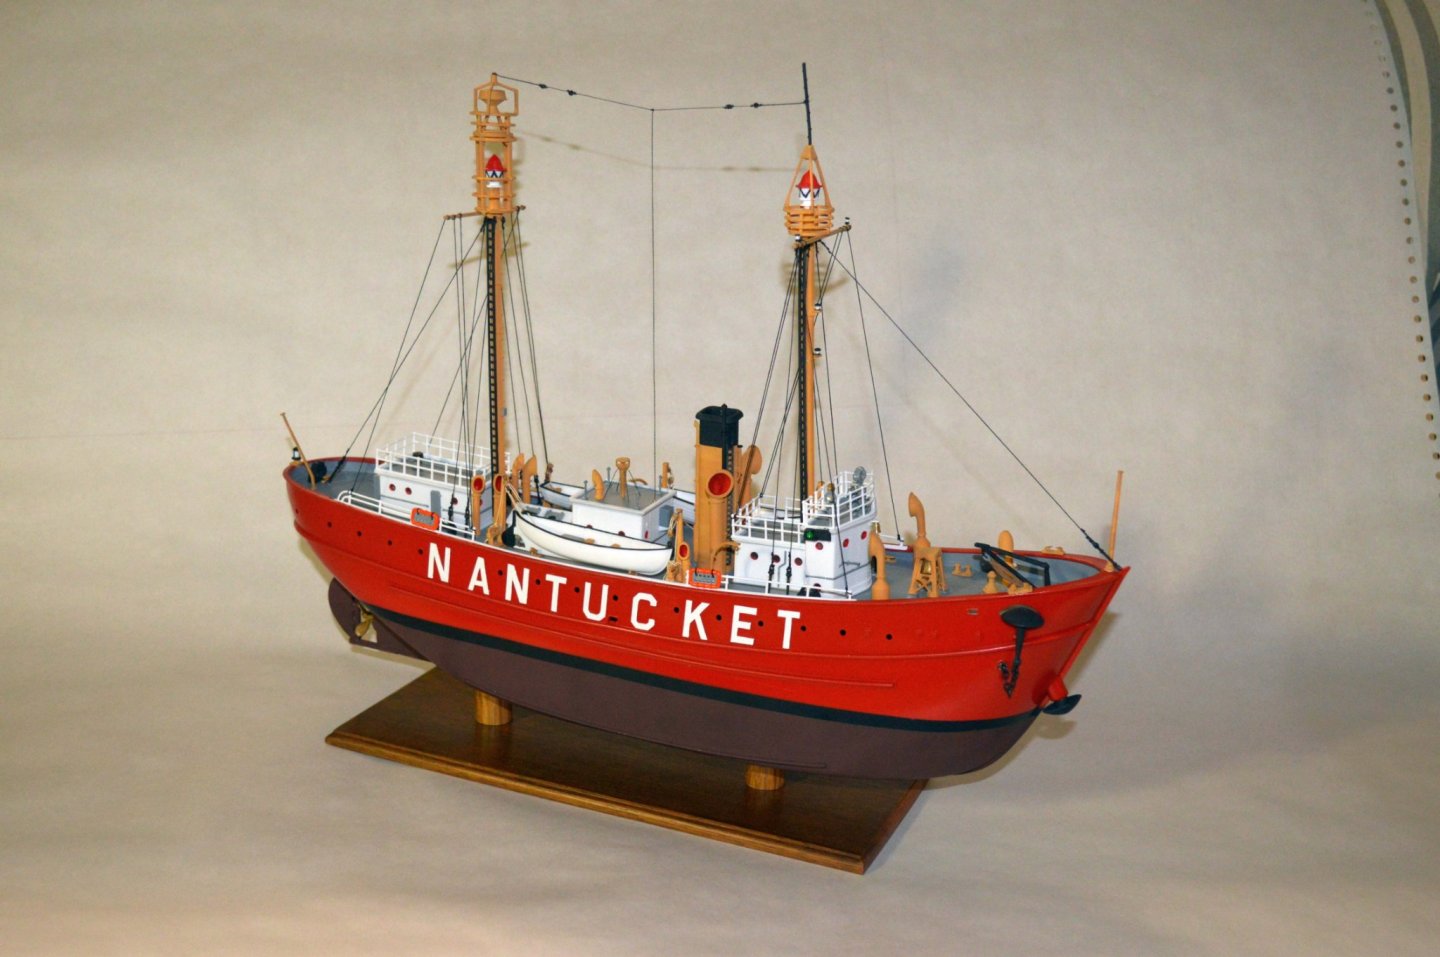 Nantucket lightship 2.jpg